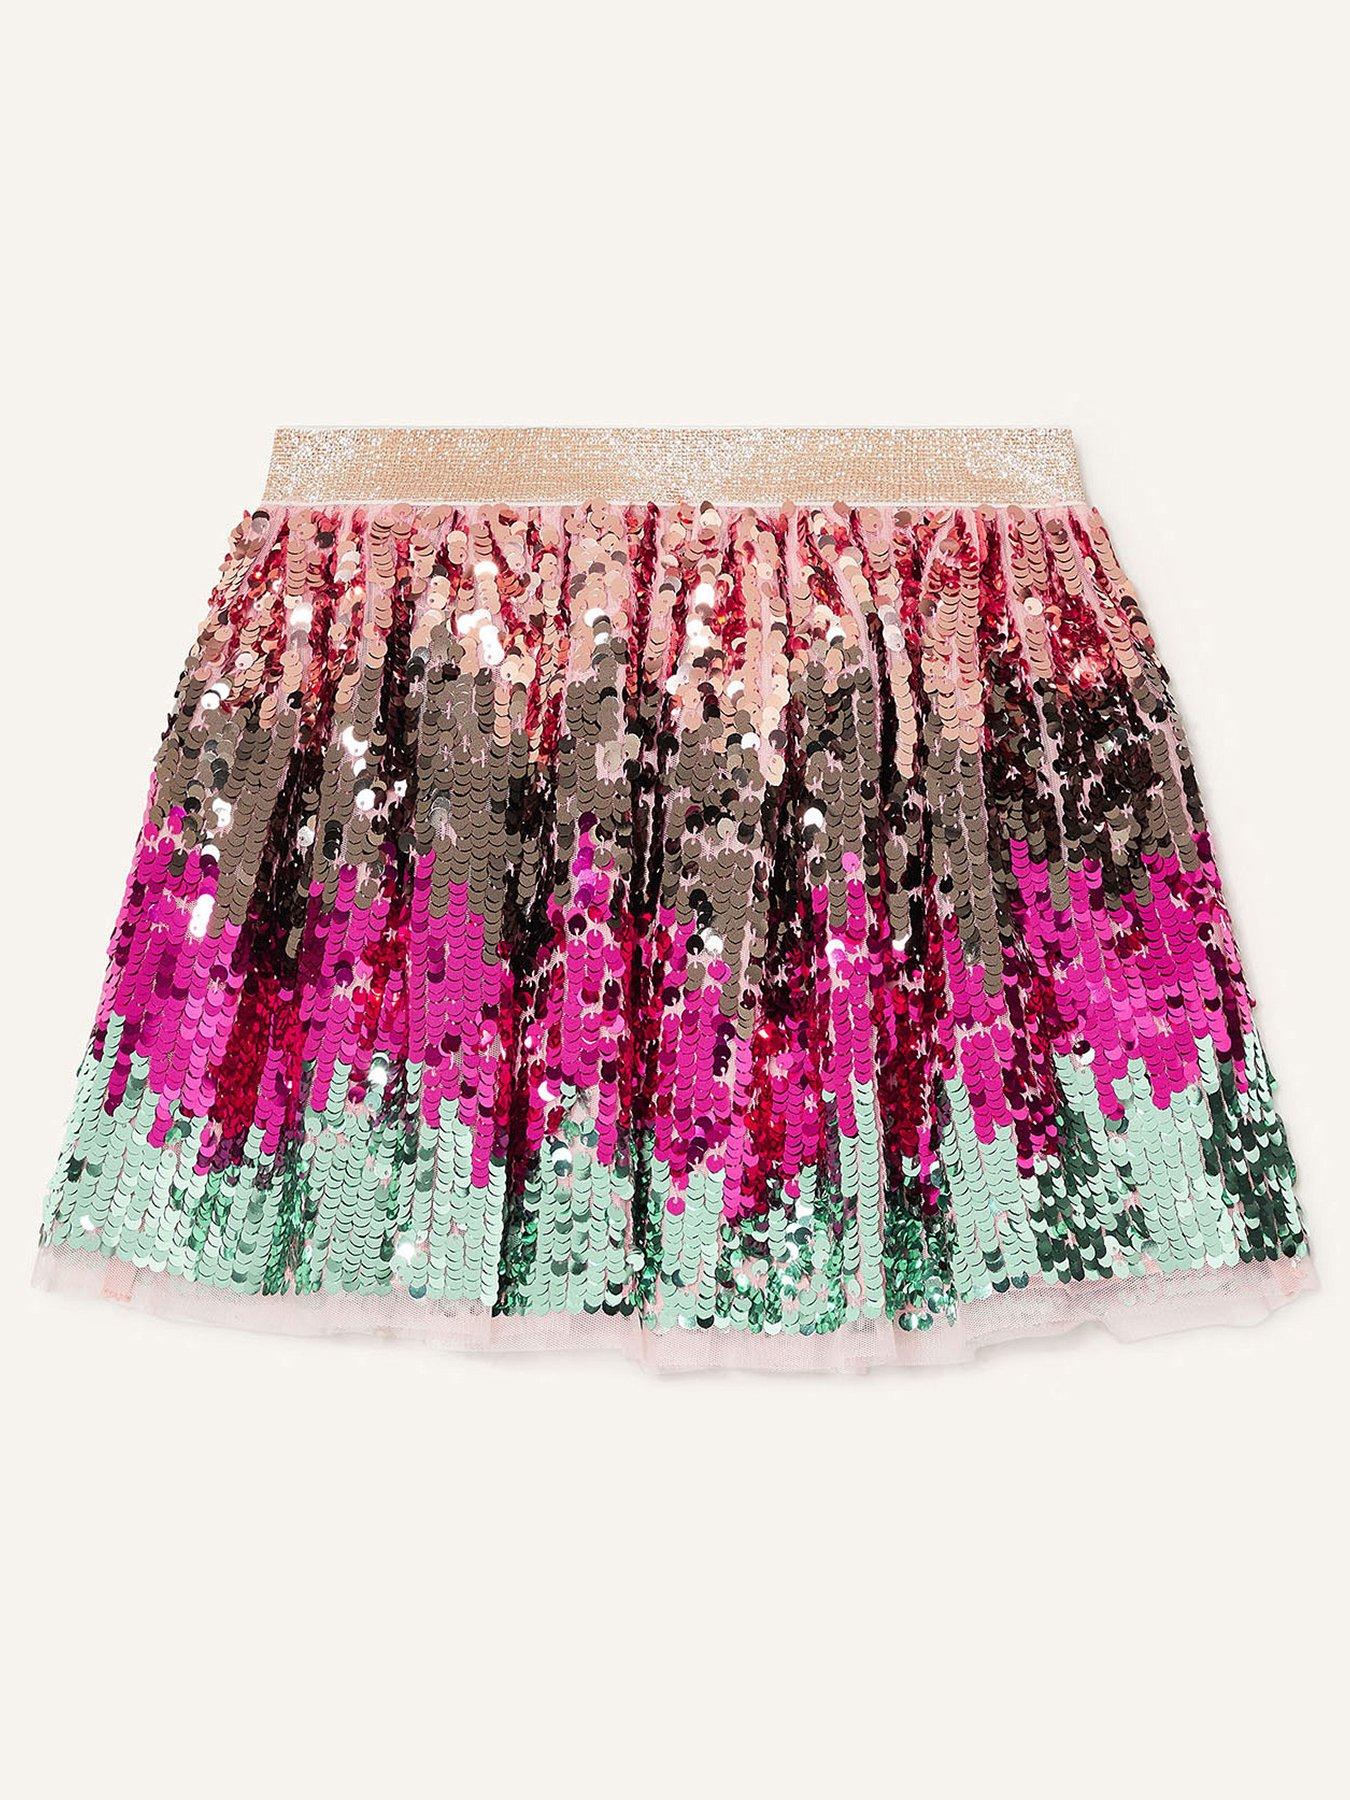  Girls Multi Sequin Skirt - Multi